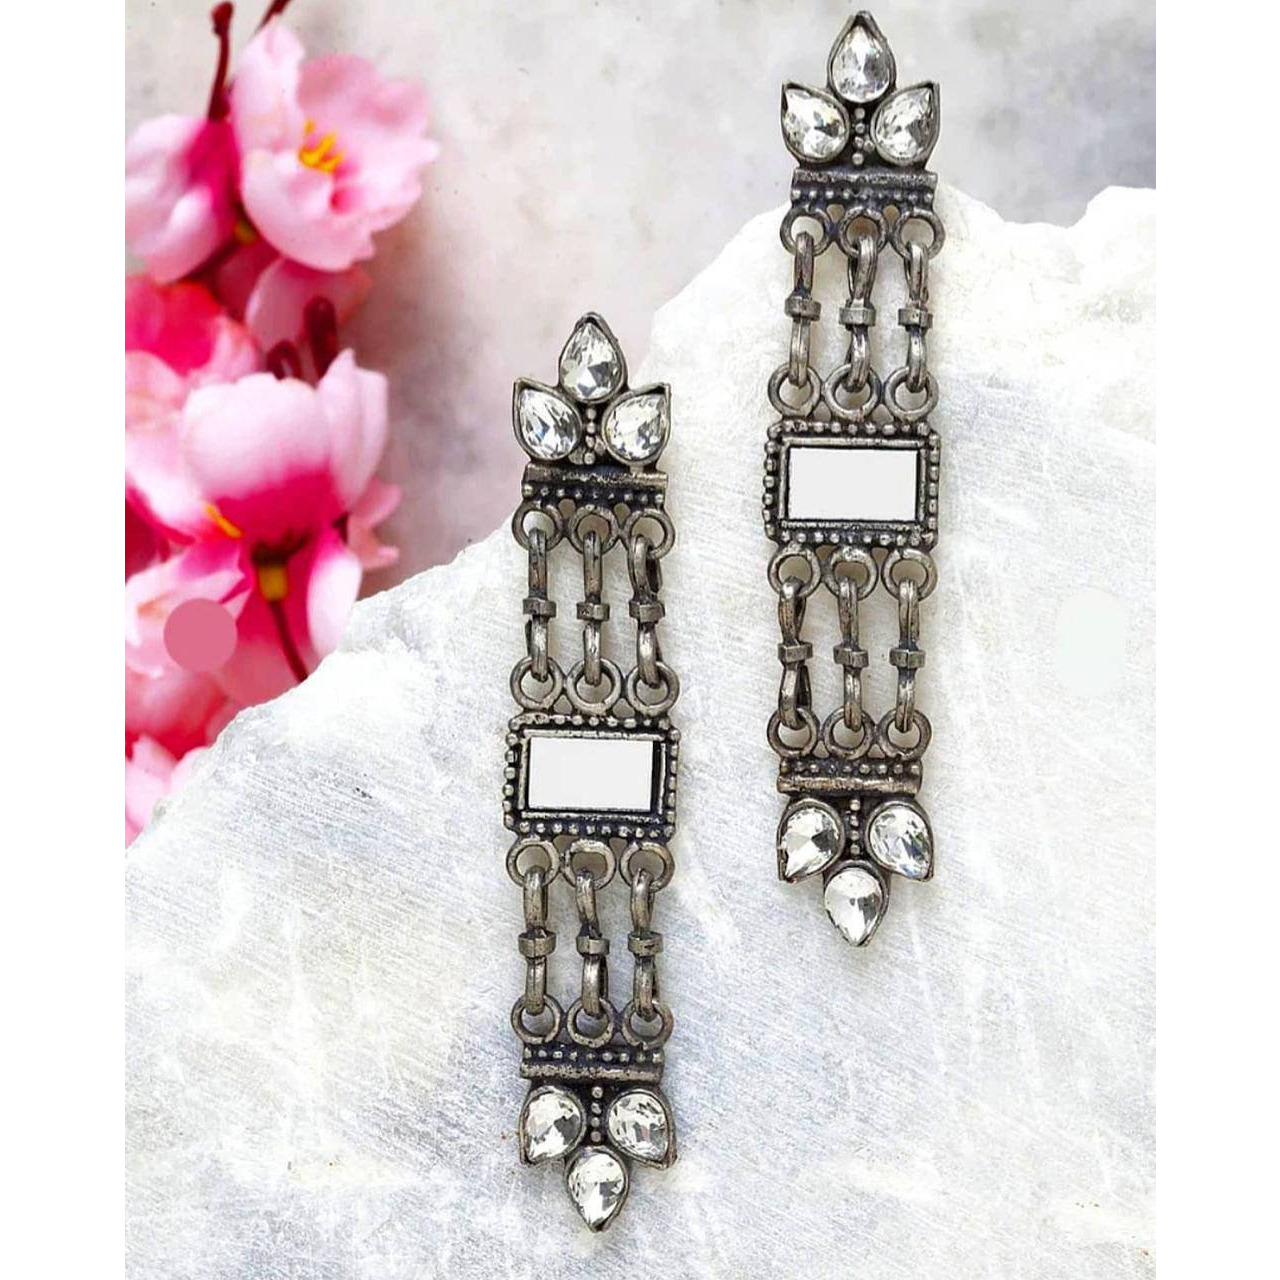 Mirror earrings, Indian long chandelier earrings, Afghani earrings, oxidised earrings, silver look earrings, handmade, gifts for her, annive